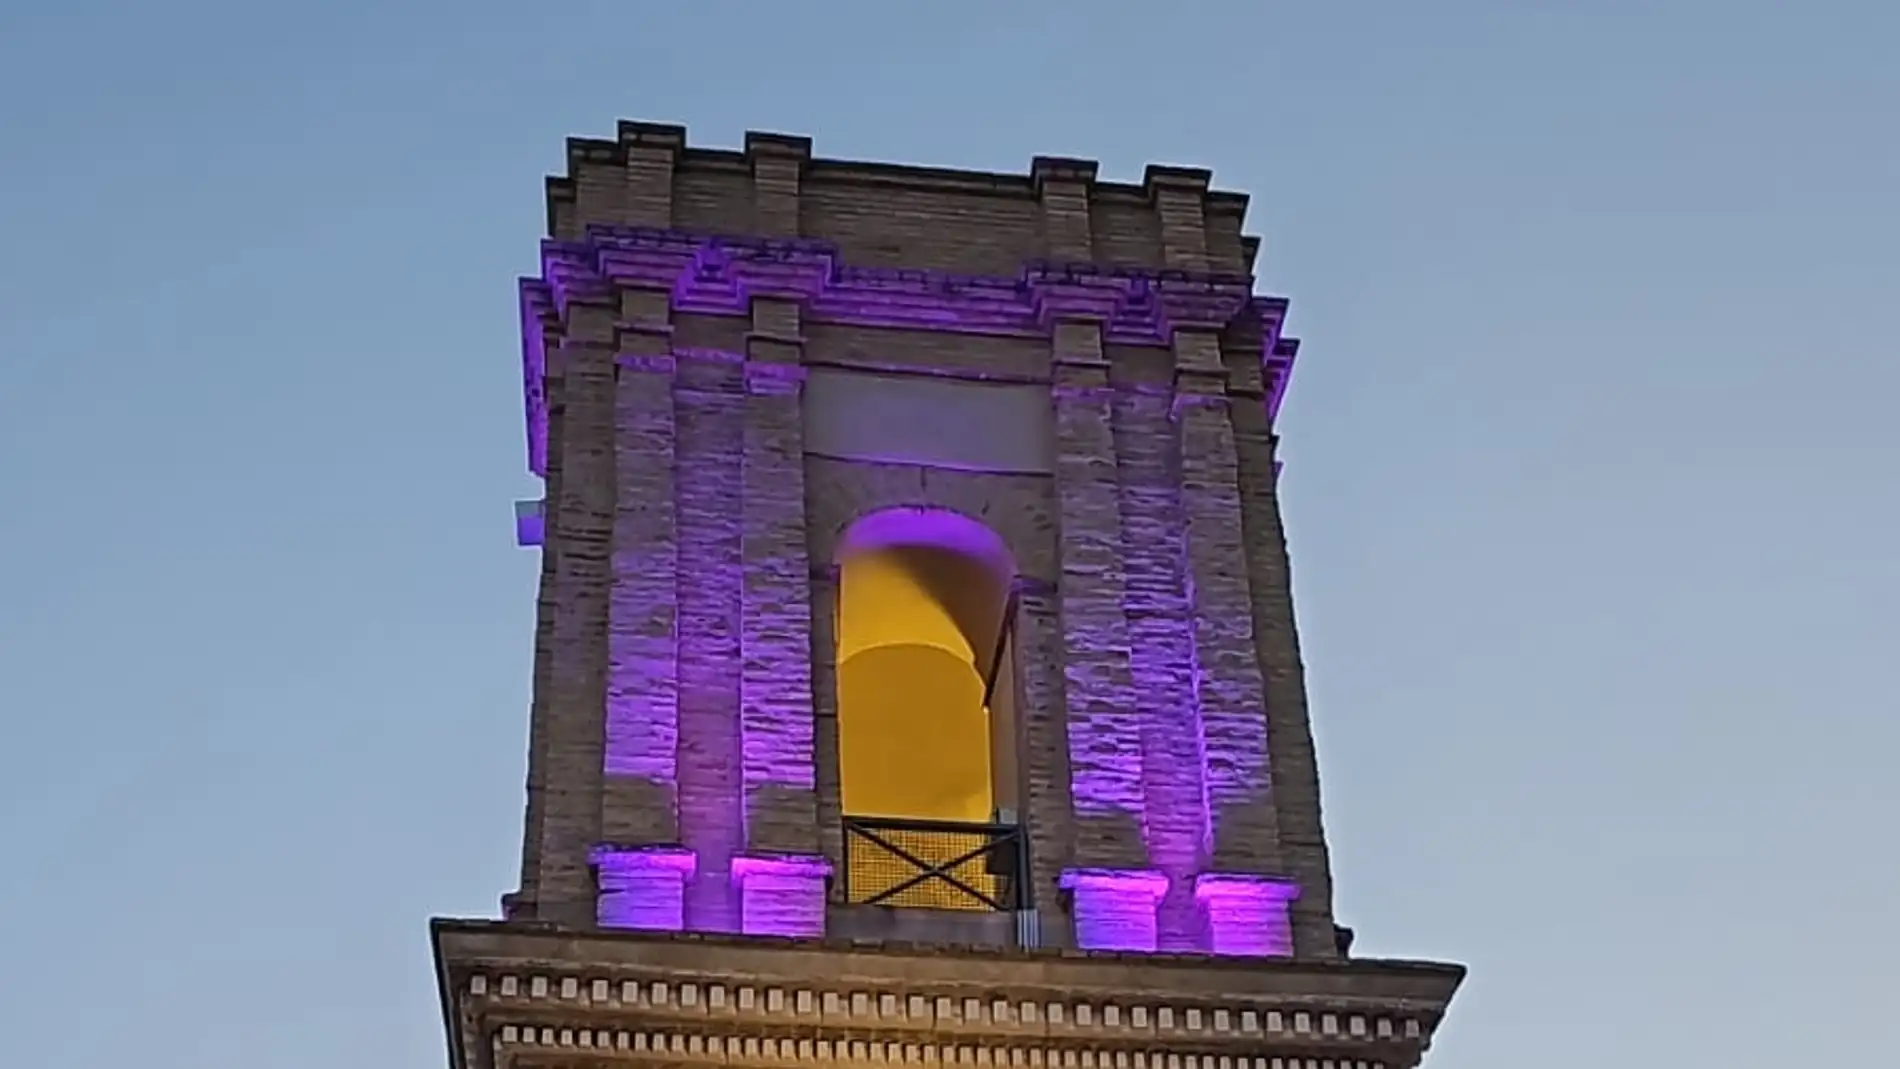 Bolulla ilumina en violeta el campanario de su iglesia para conmemorar el 8M